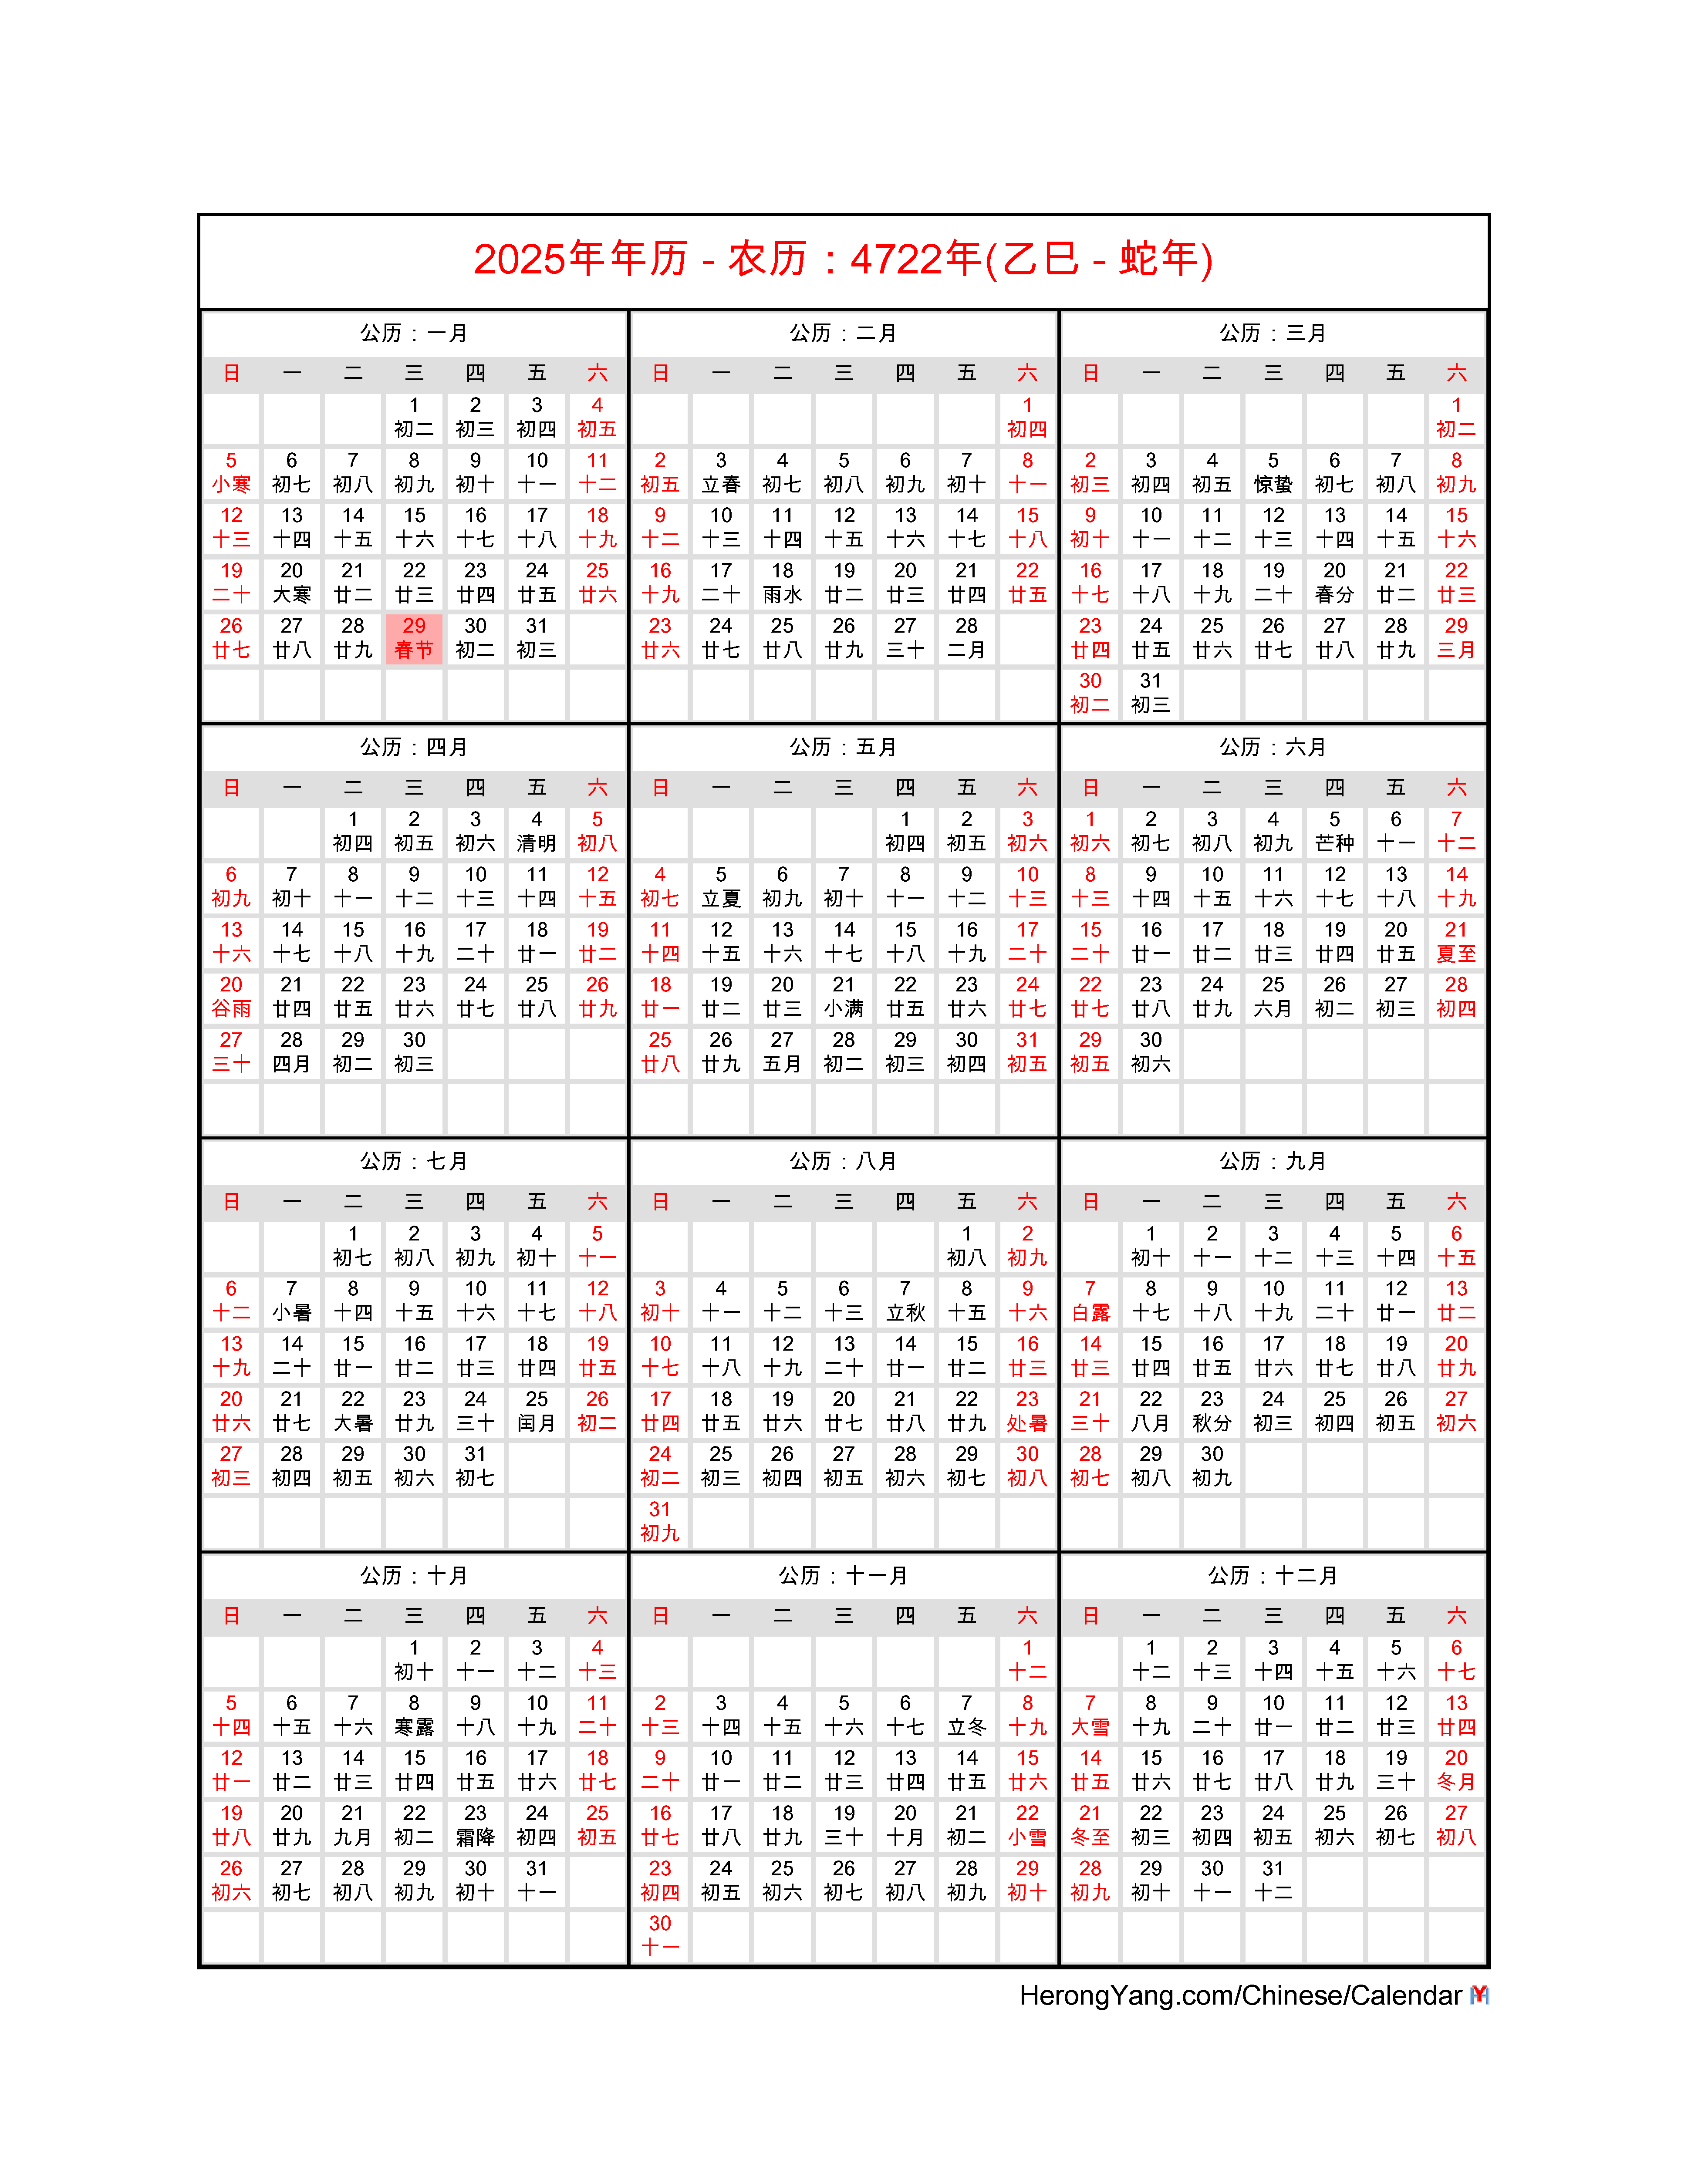 2025 Calendar Cny